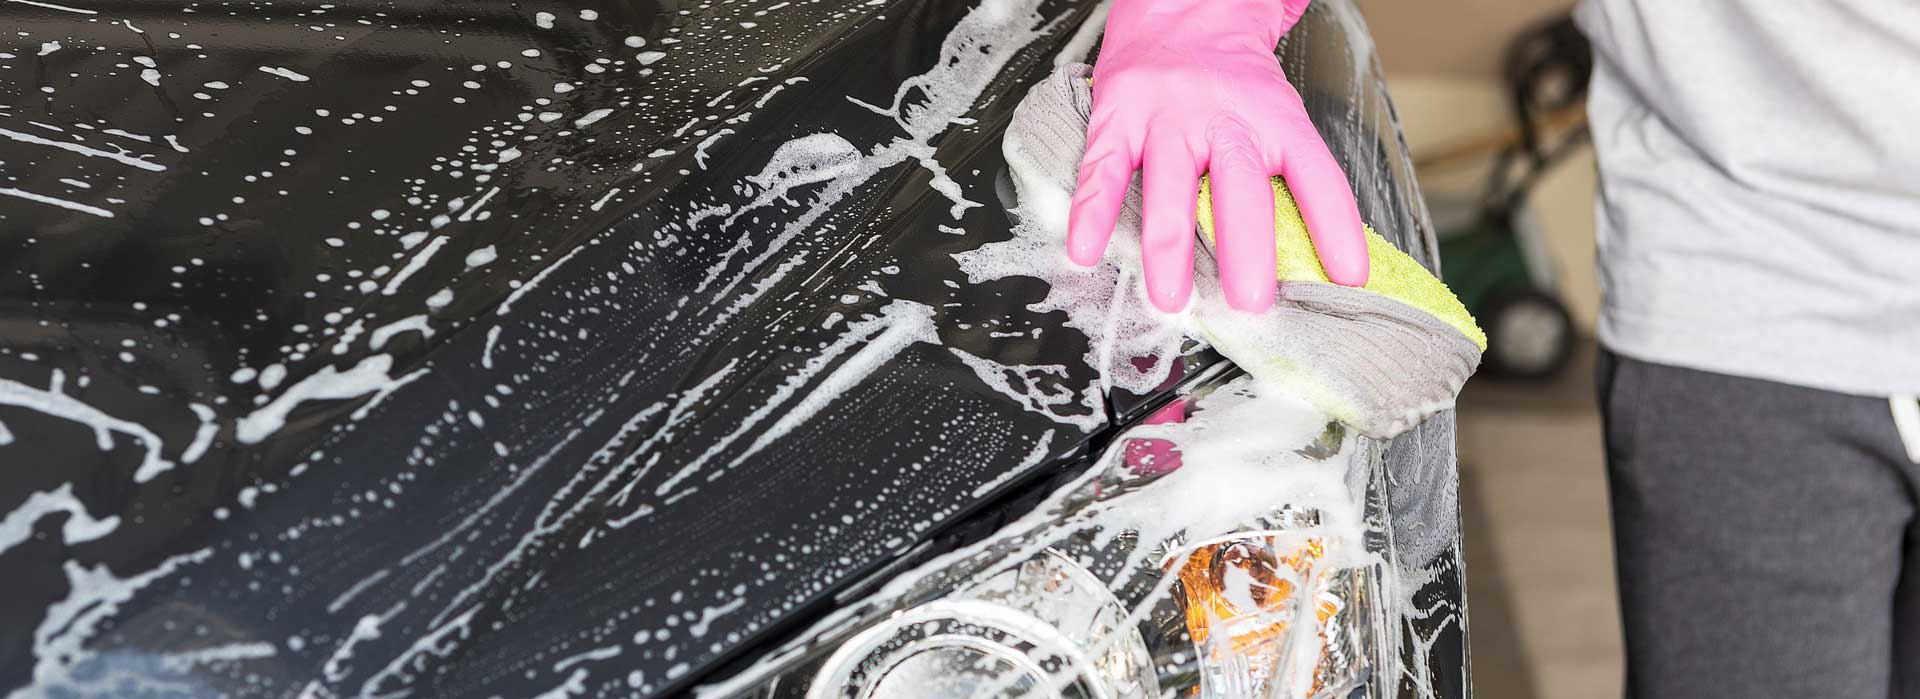 7 najcastejsich chyb pri umyvani auta